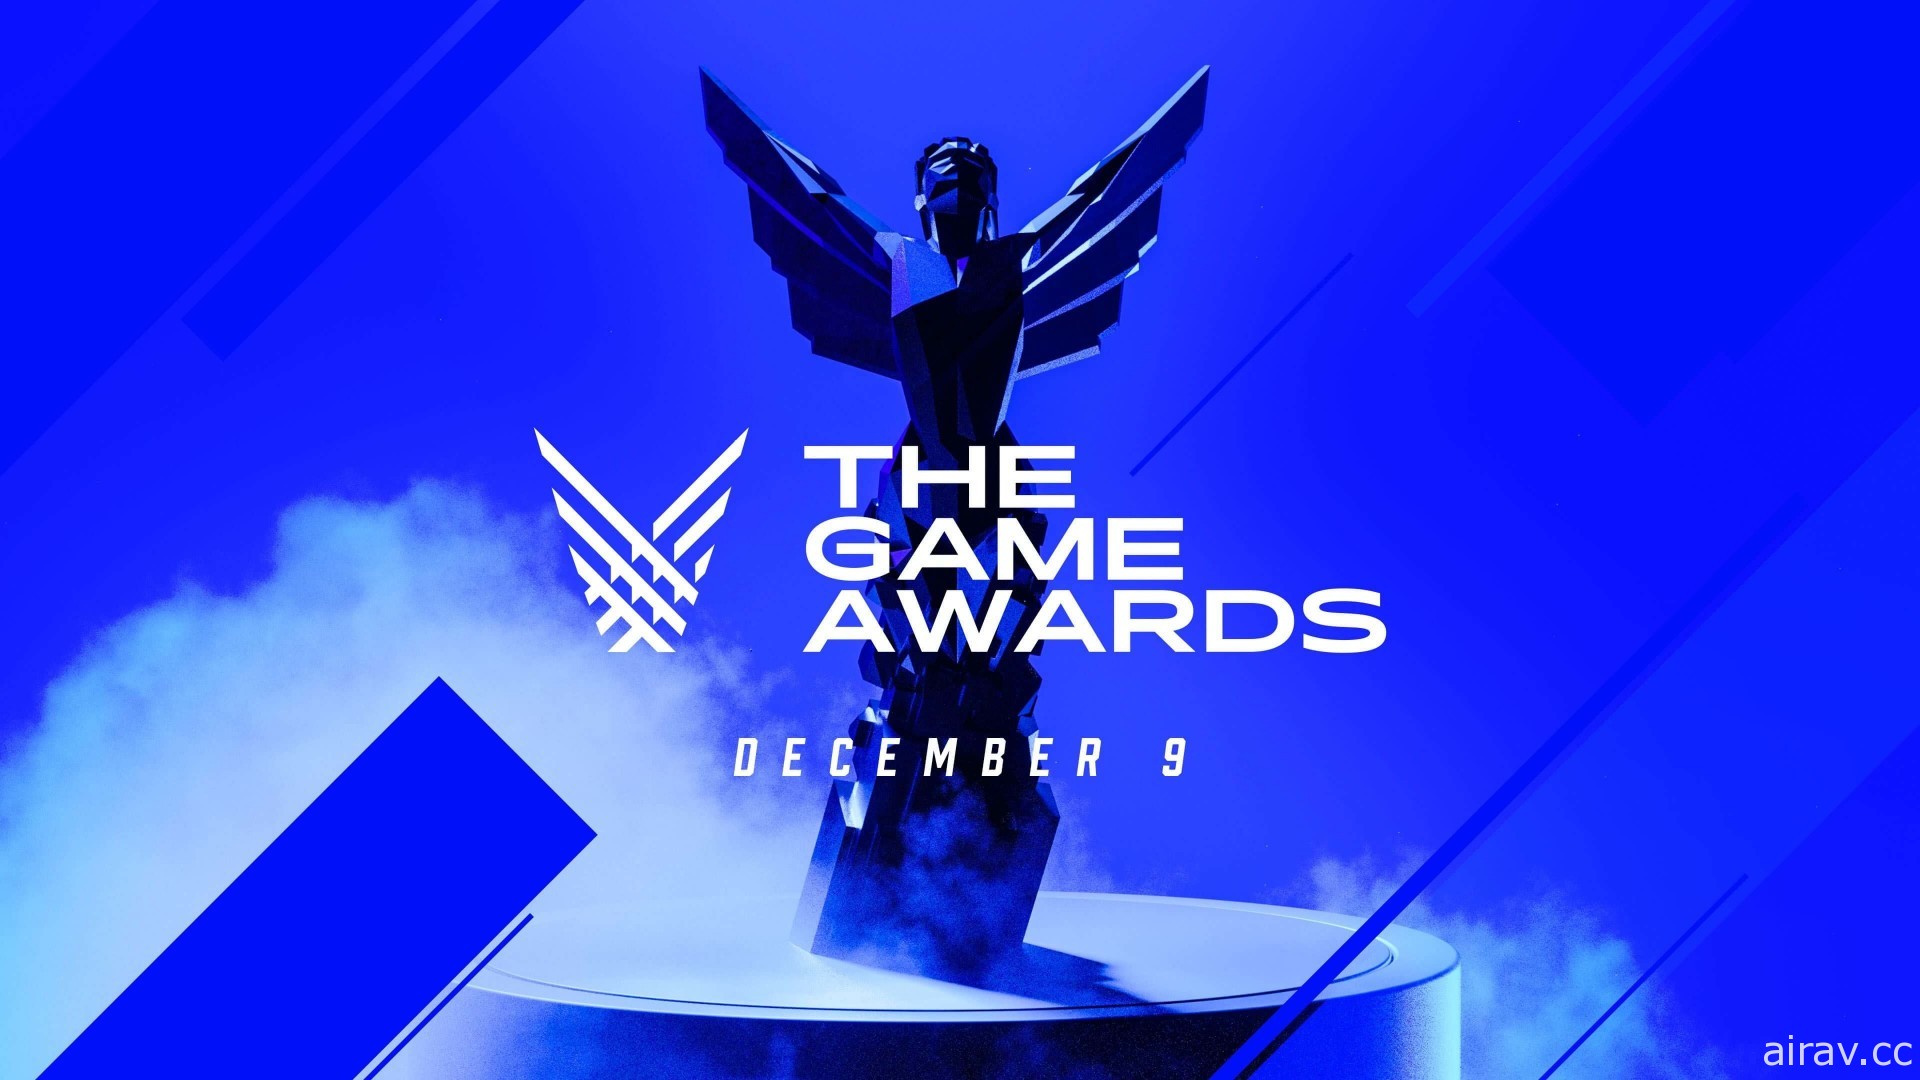 【TGA 21】The Game Awards 確定邀請基努‧李維、溫明娜等重量級嘉賓與會